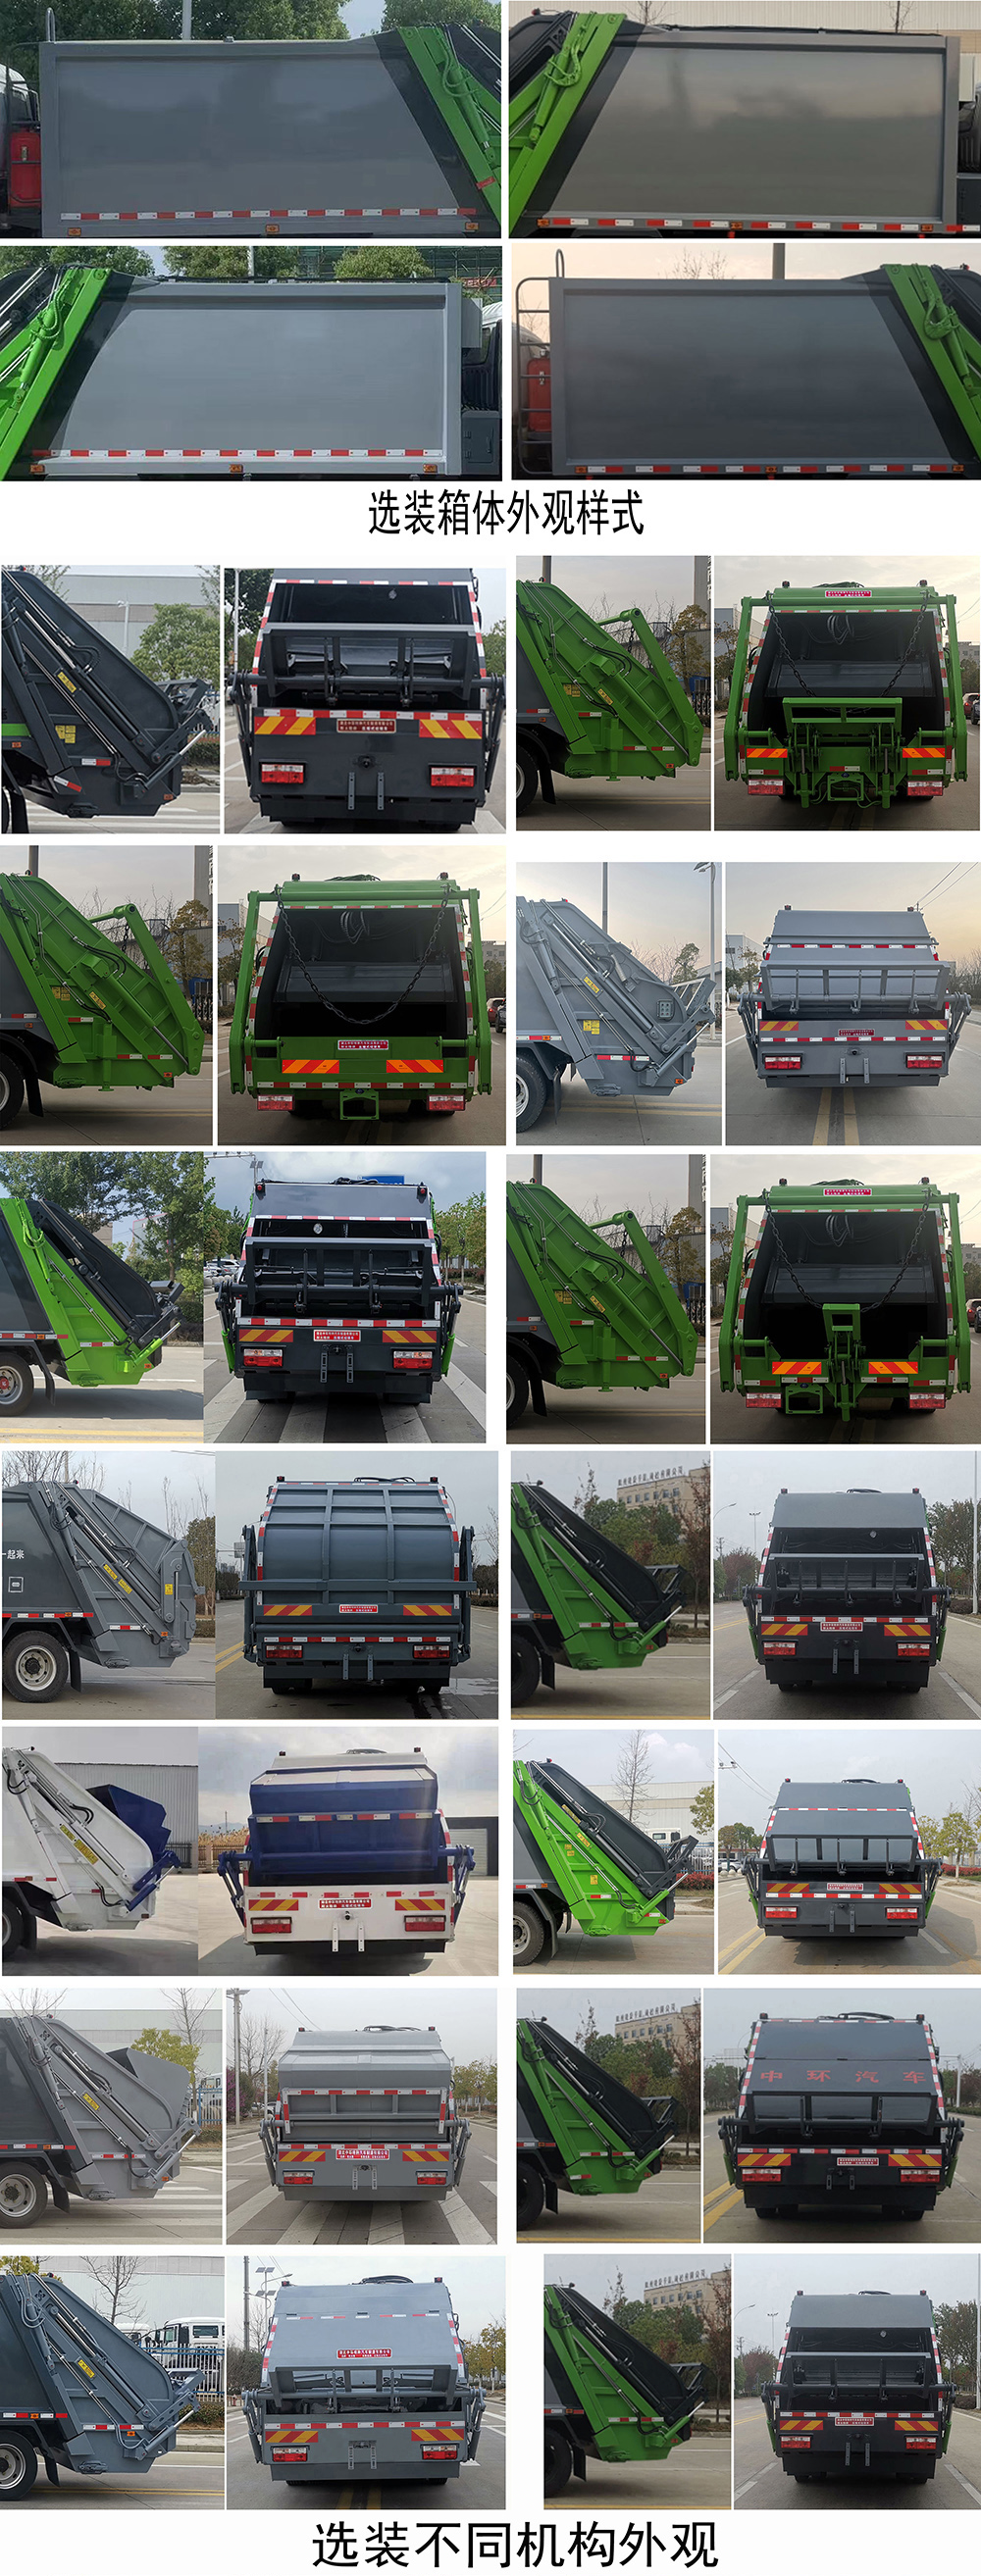 斯太隆牌HZH5185ZYS6压缩式垃圾车公告图片